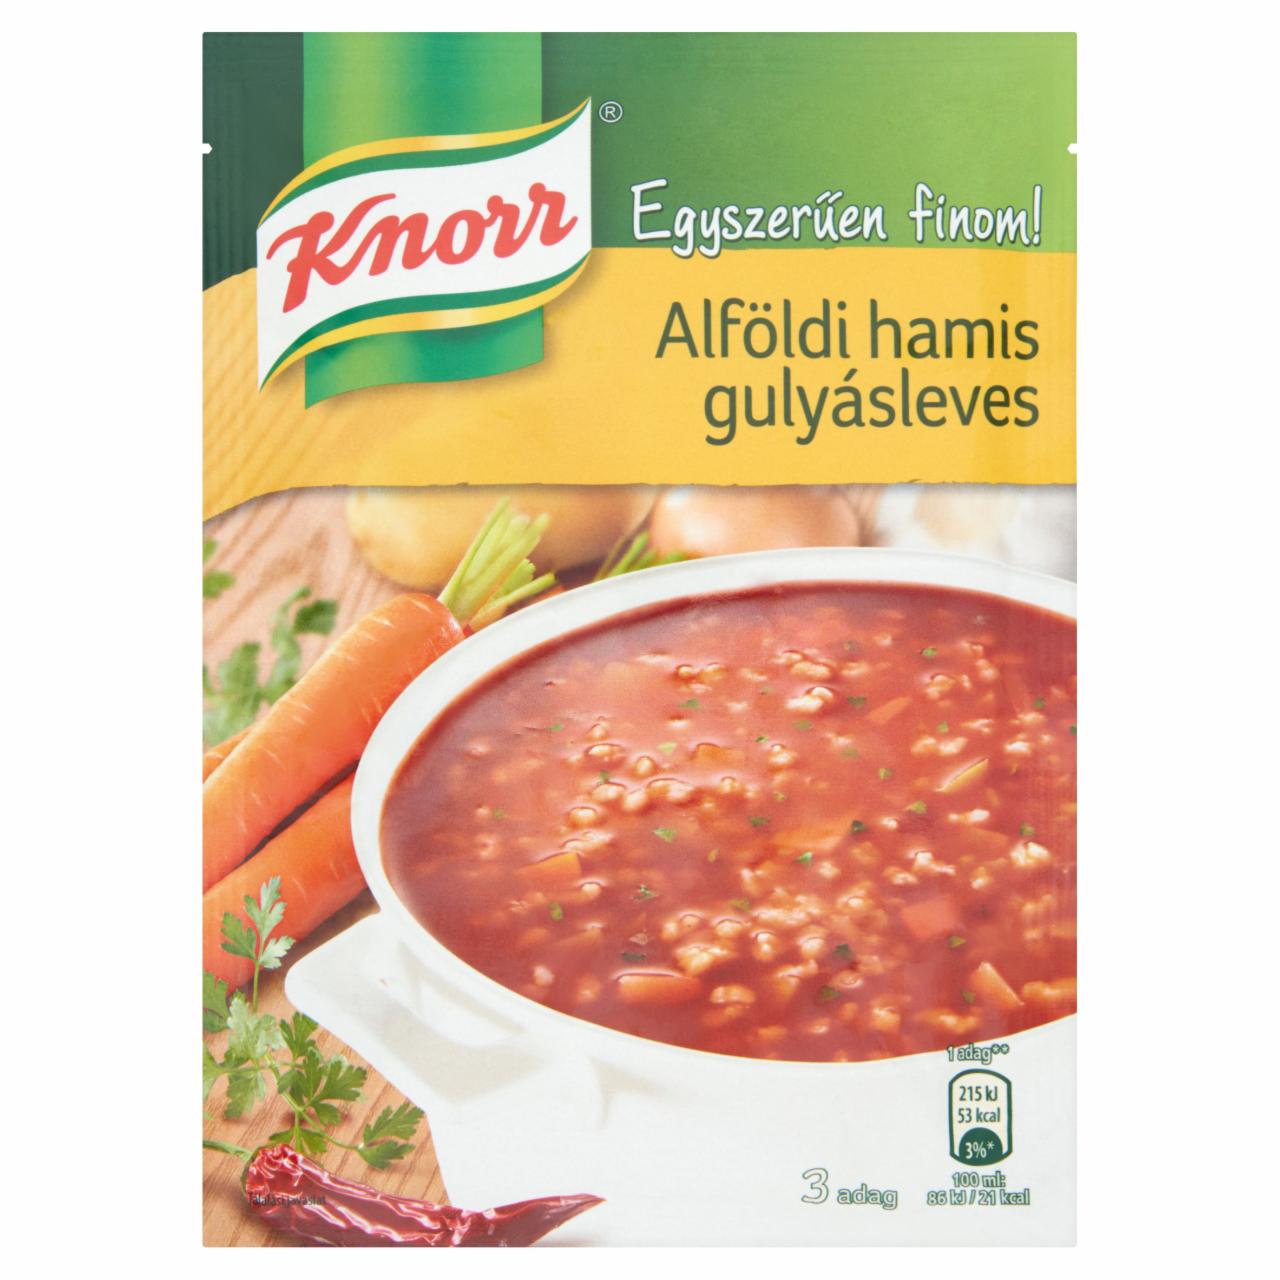 Képek - Knorr alföldi hamis gulyásleves 50 g